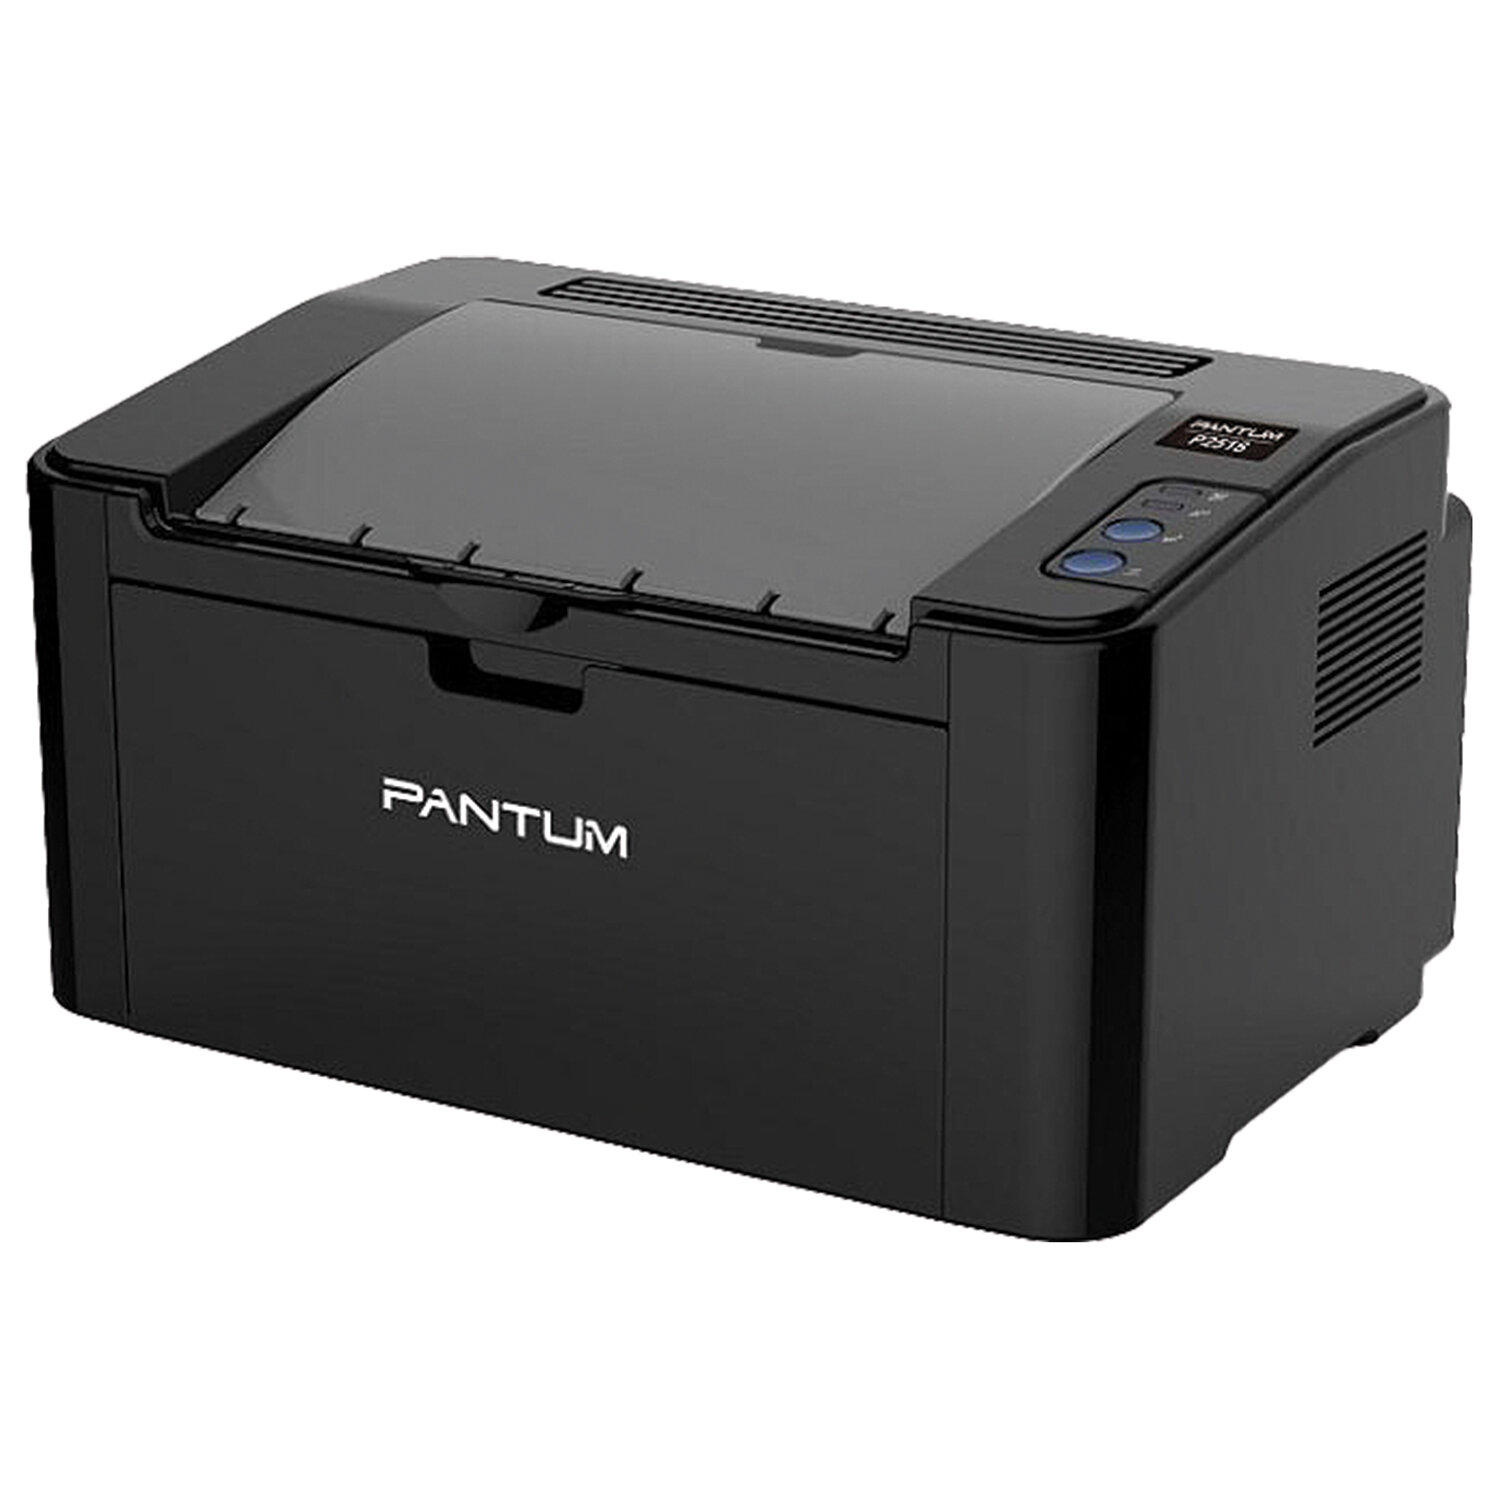 Принтер лазерный Pantum p2207 a4